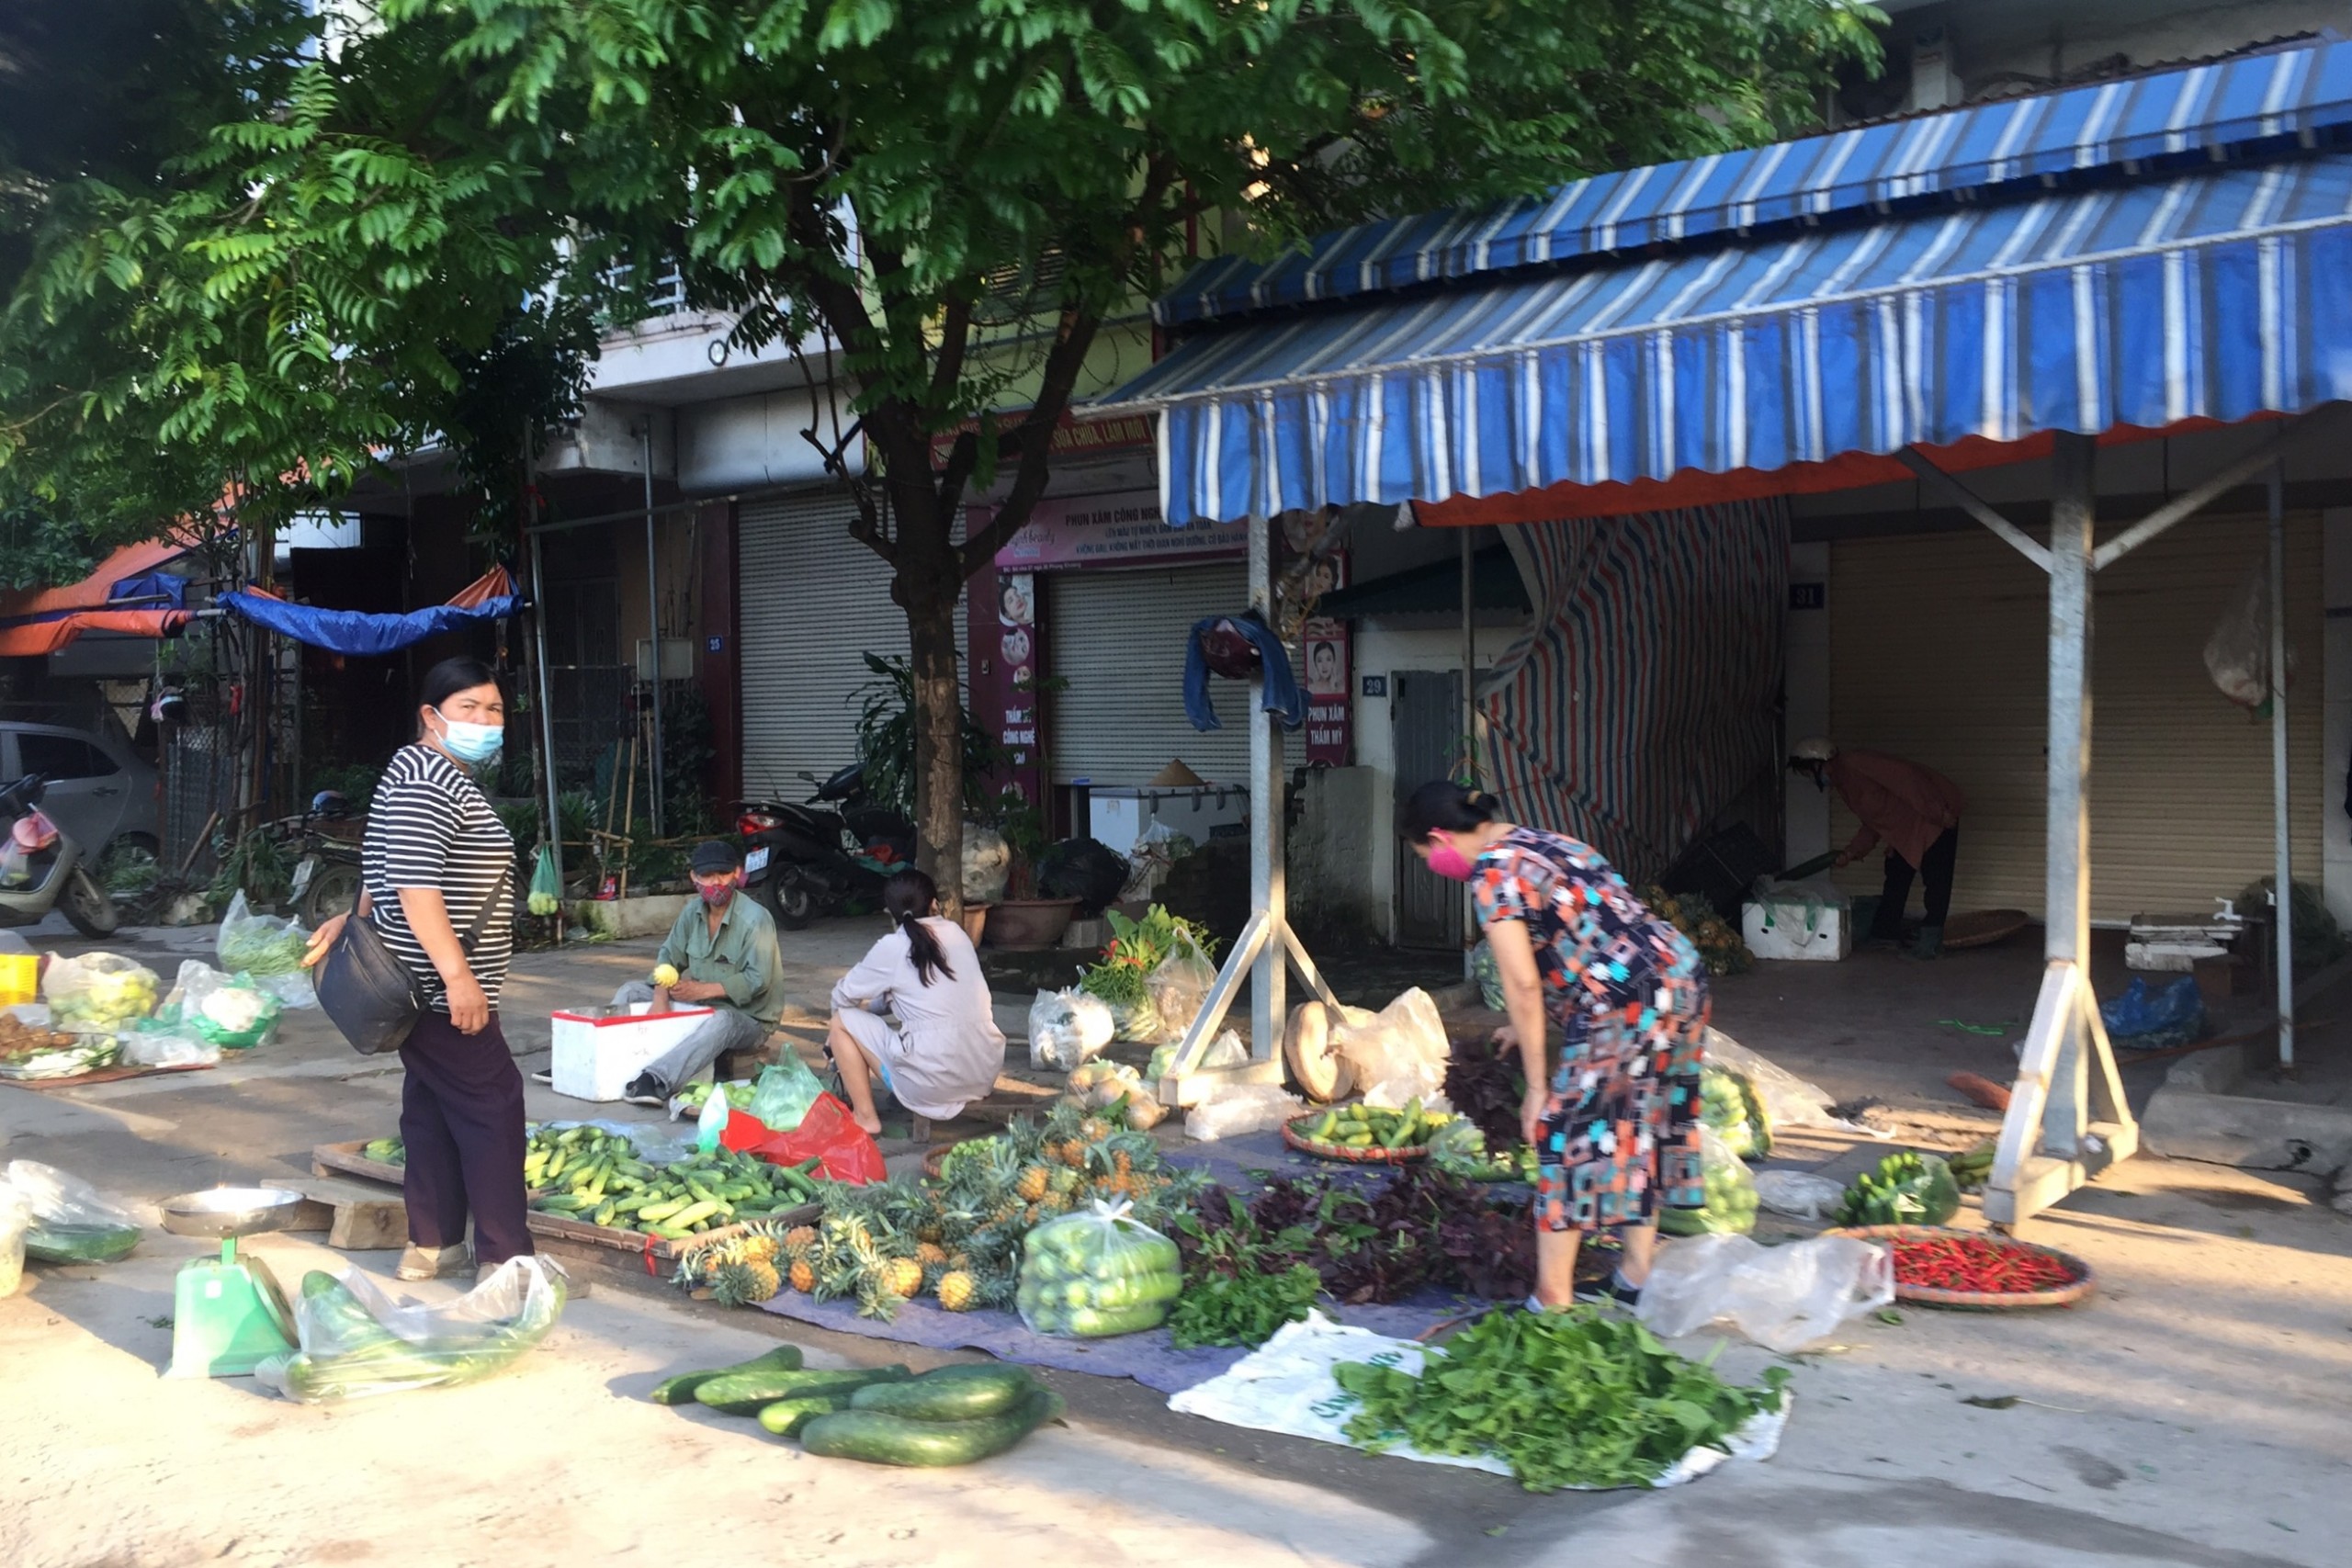 Chợ cóc, chợ tạm ở Hà Nội vẫn hoạt động bất chấp lệnh cấm - Ảnh 3.